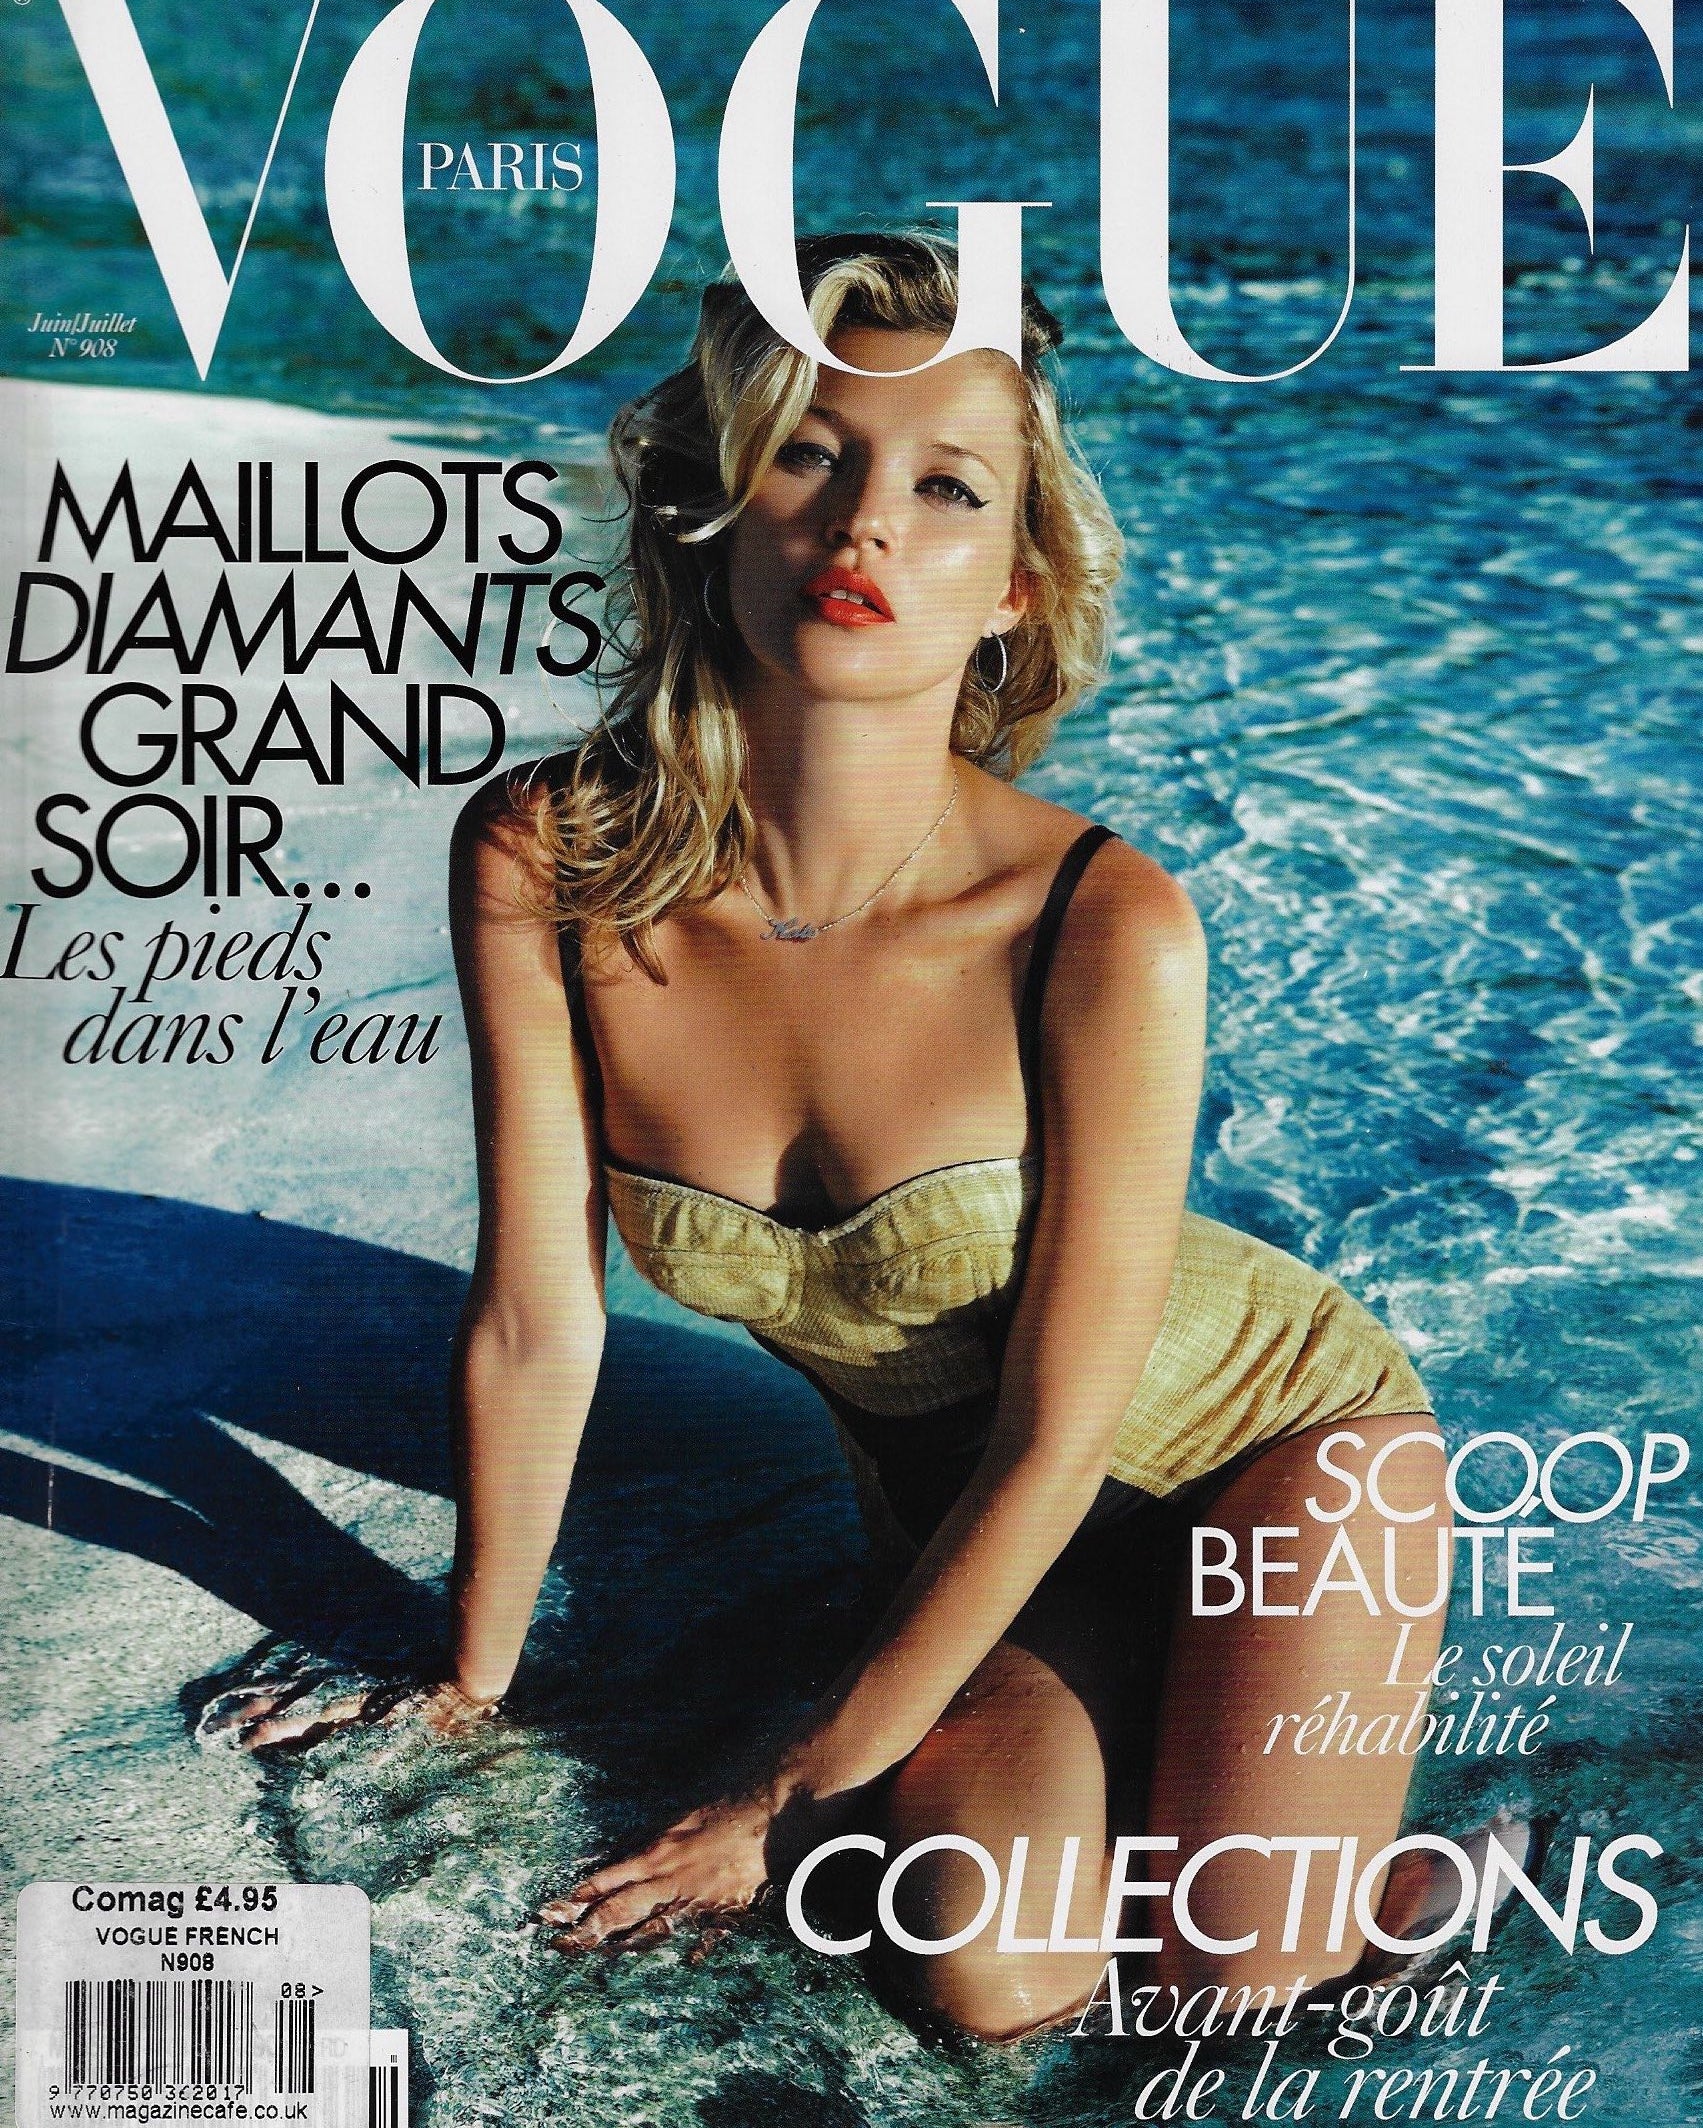 Vogue Paris Magazine Collection